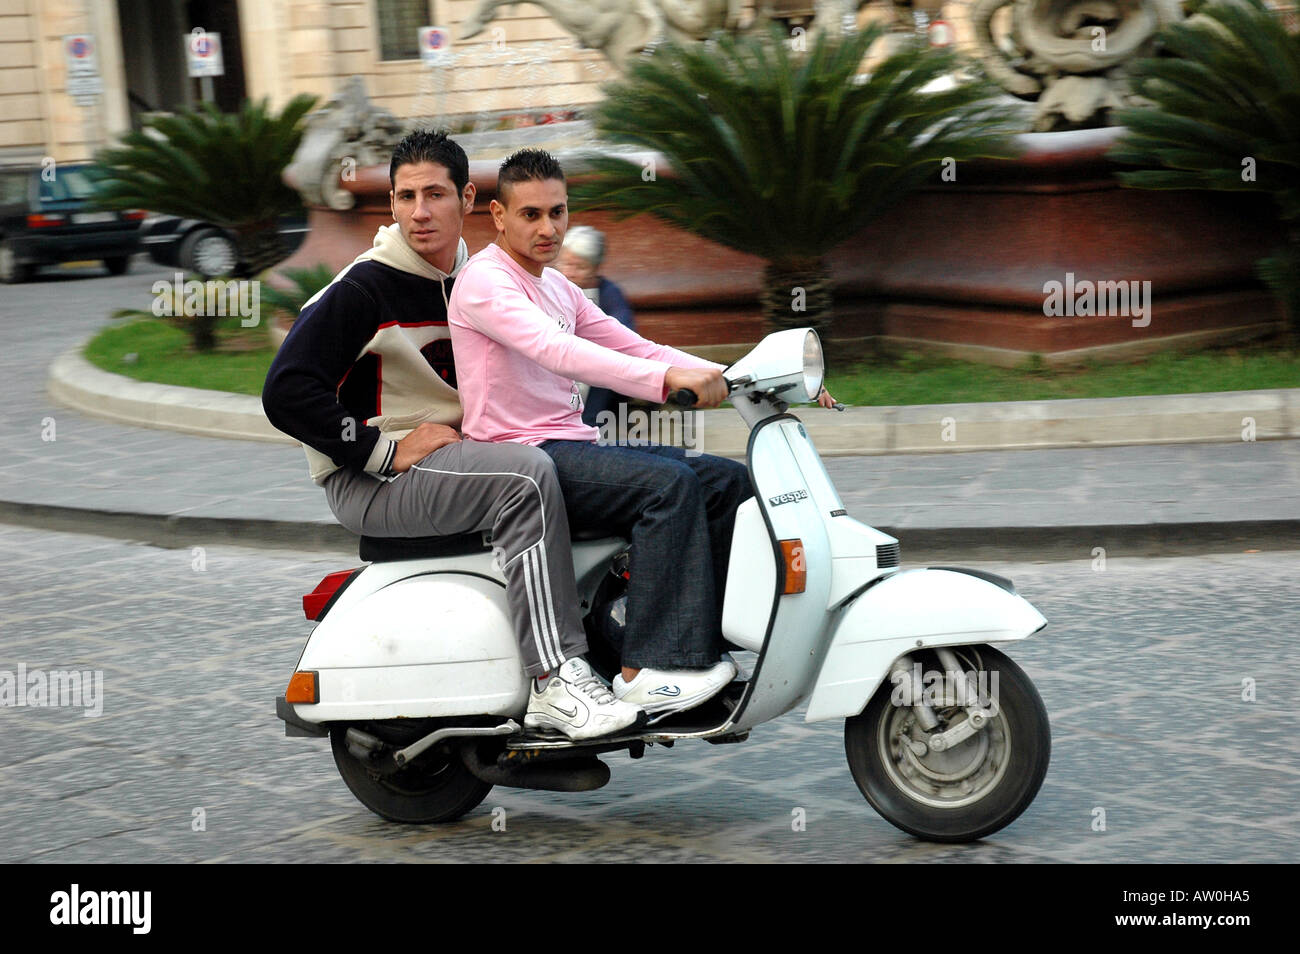 Zwei junge Männer auf einem Roller in Syrakus Sizilien Stockfotografie -  Alamy